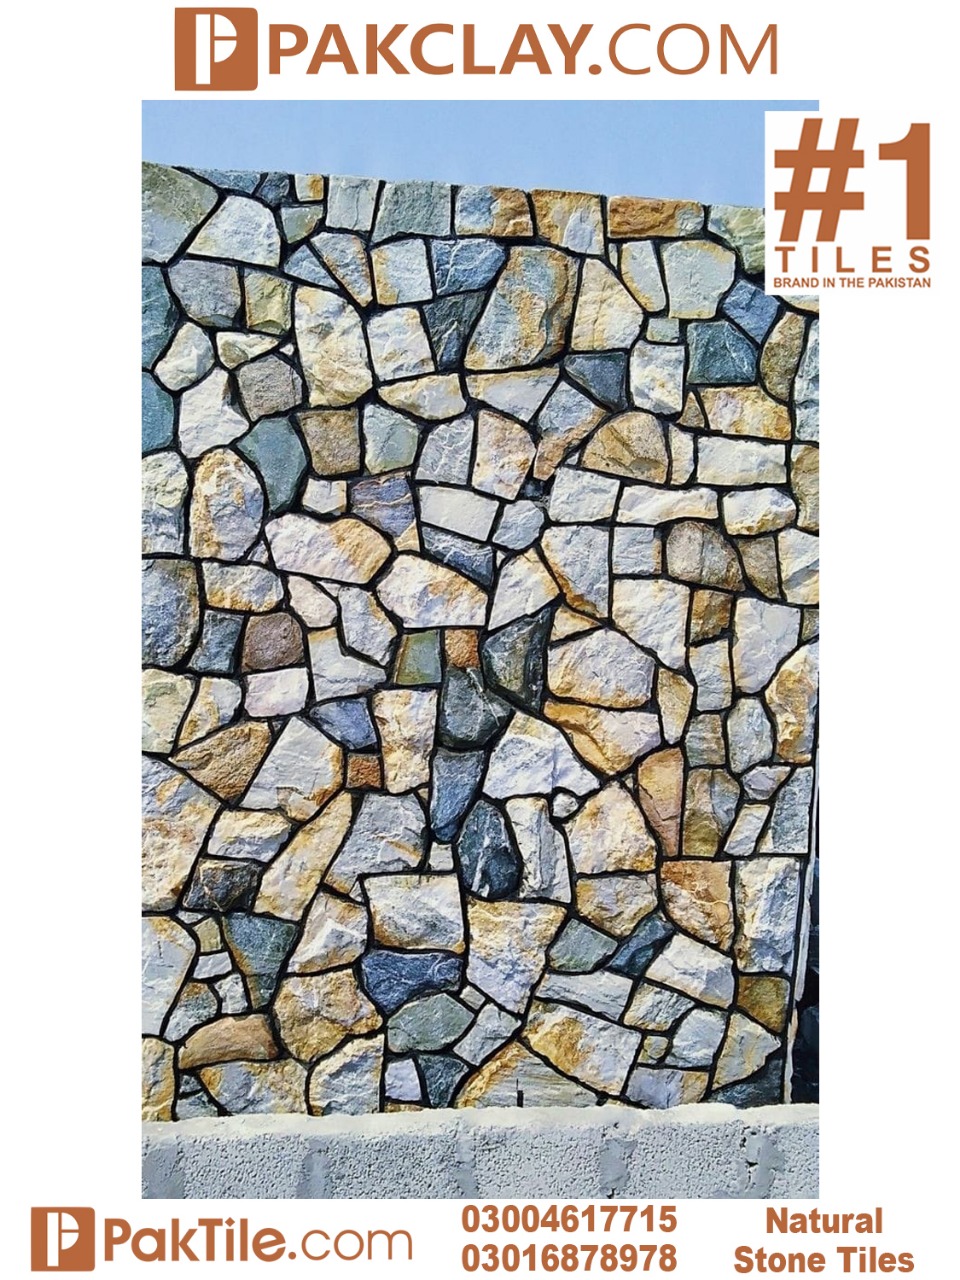 Natural Chakwal Stone Wall Tiles Design